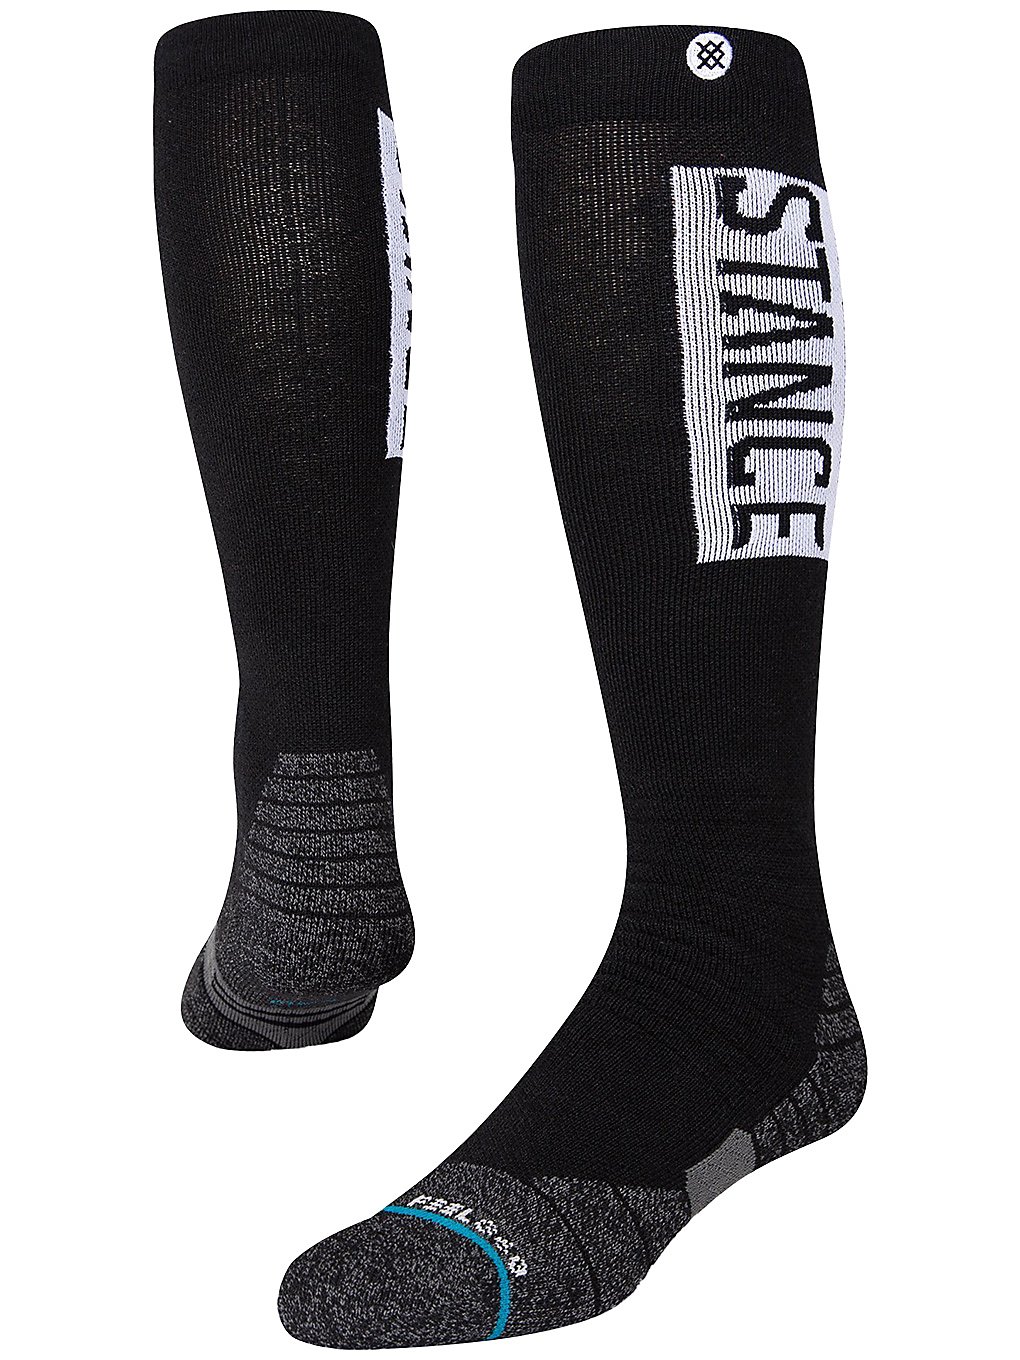 Stance OG Wool 2 Tech Socks black